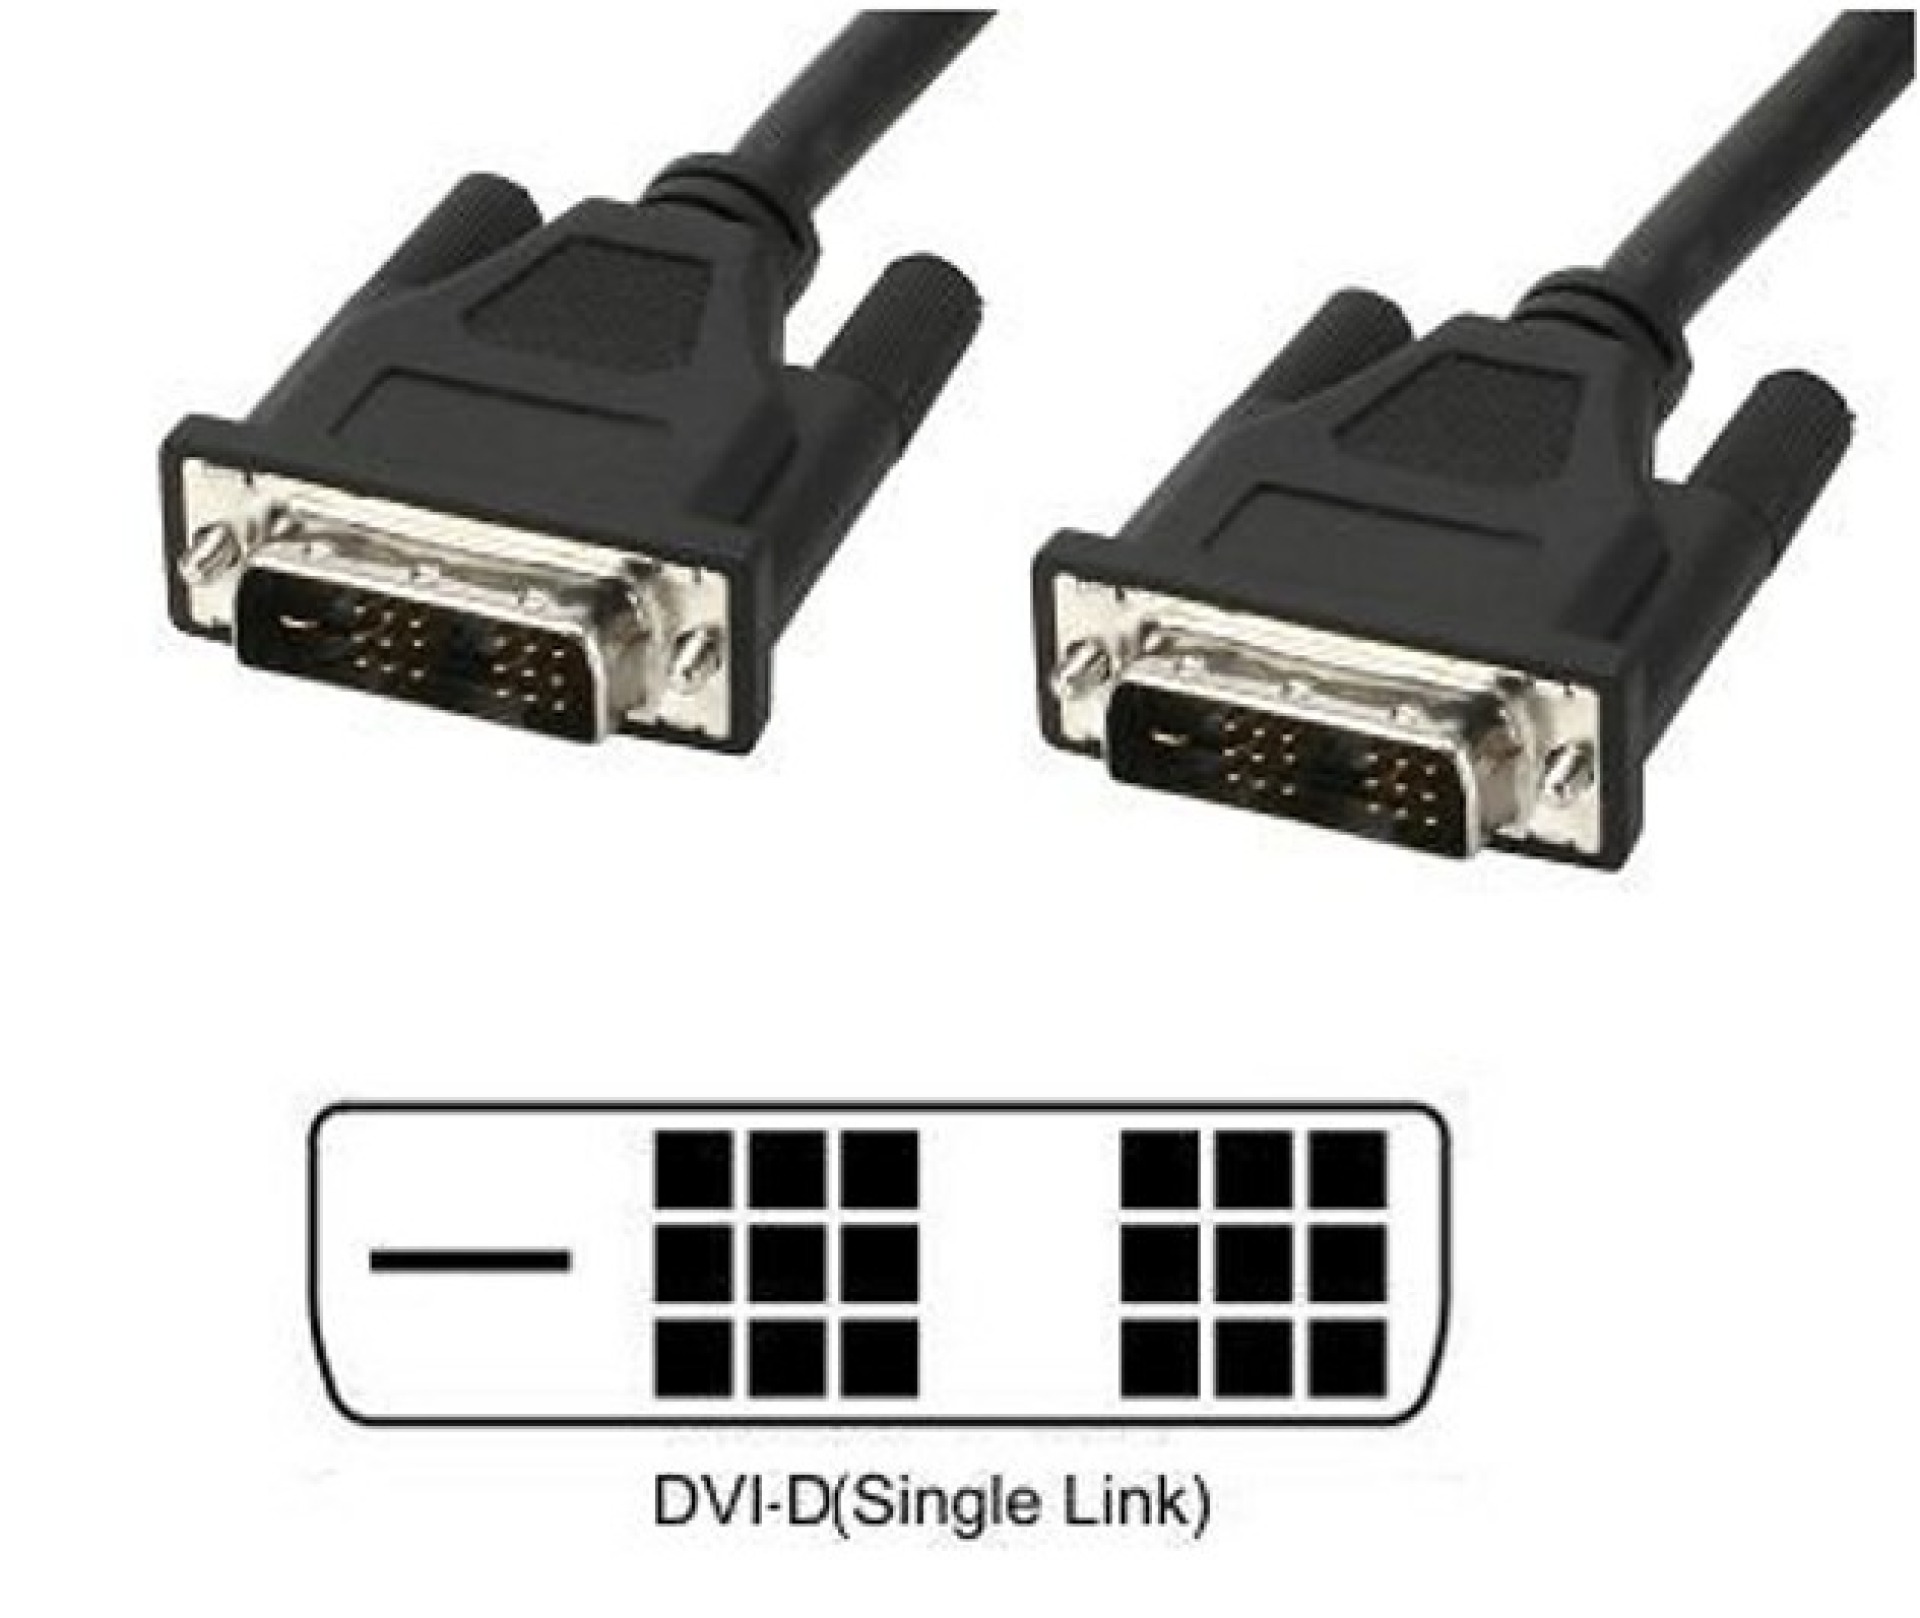 DVI-D Single-Link Anschlusskabel Stecker/Stecker, schwarz, 1,8 m